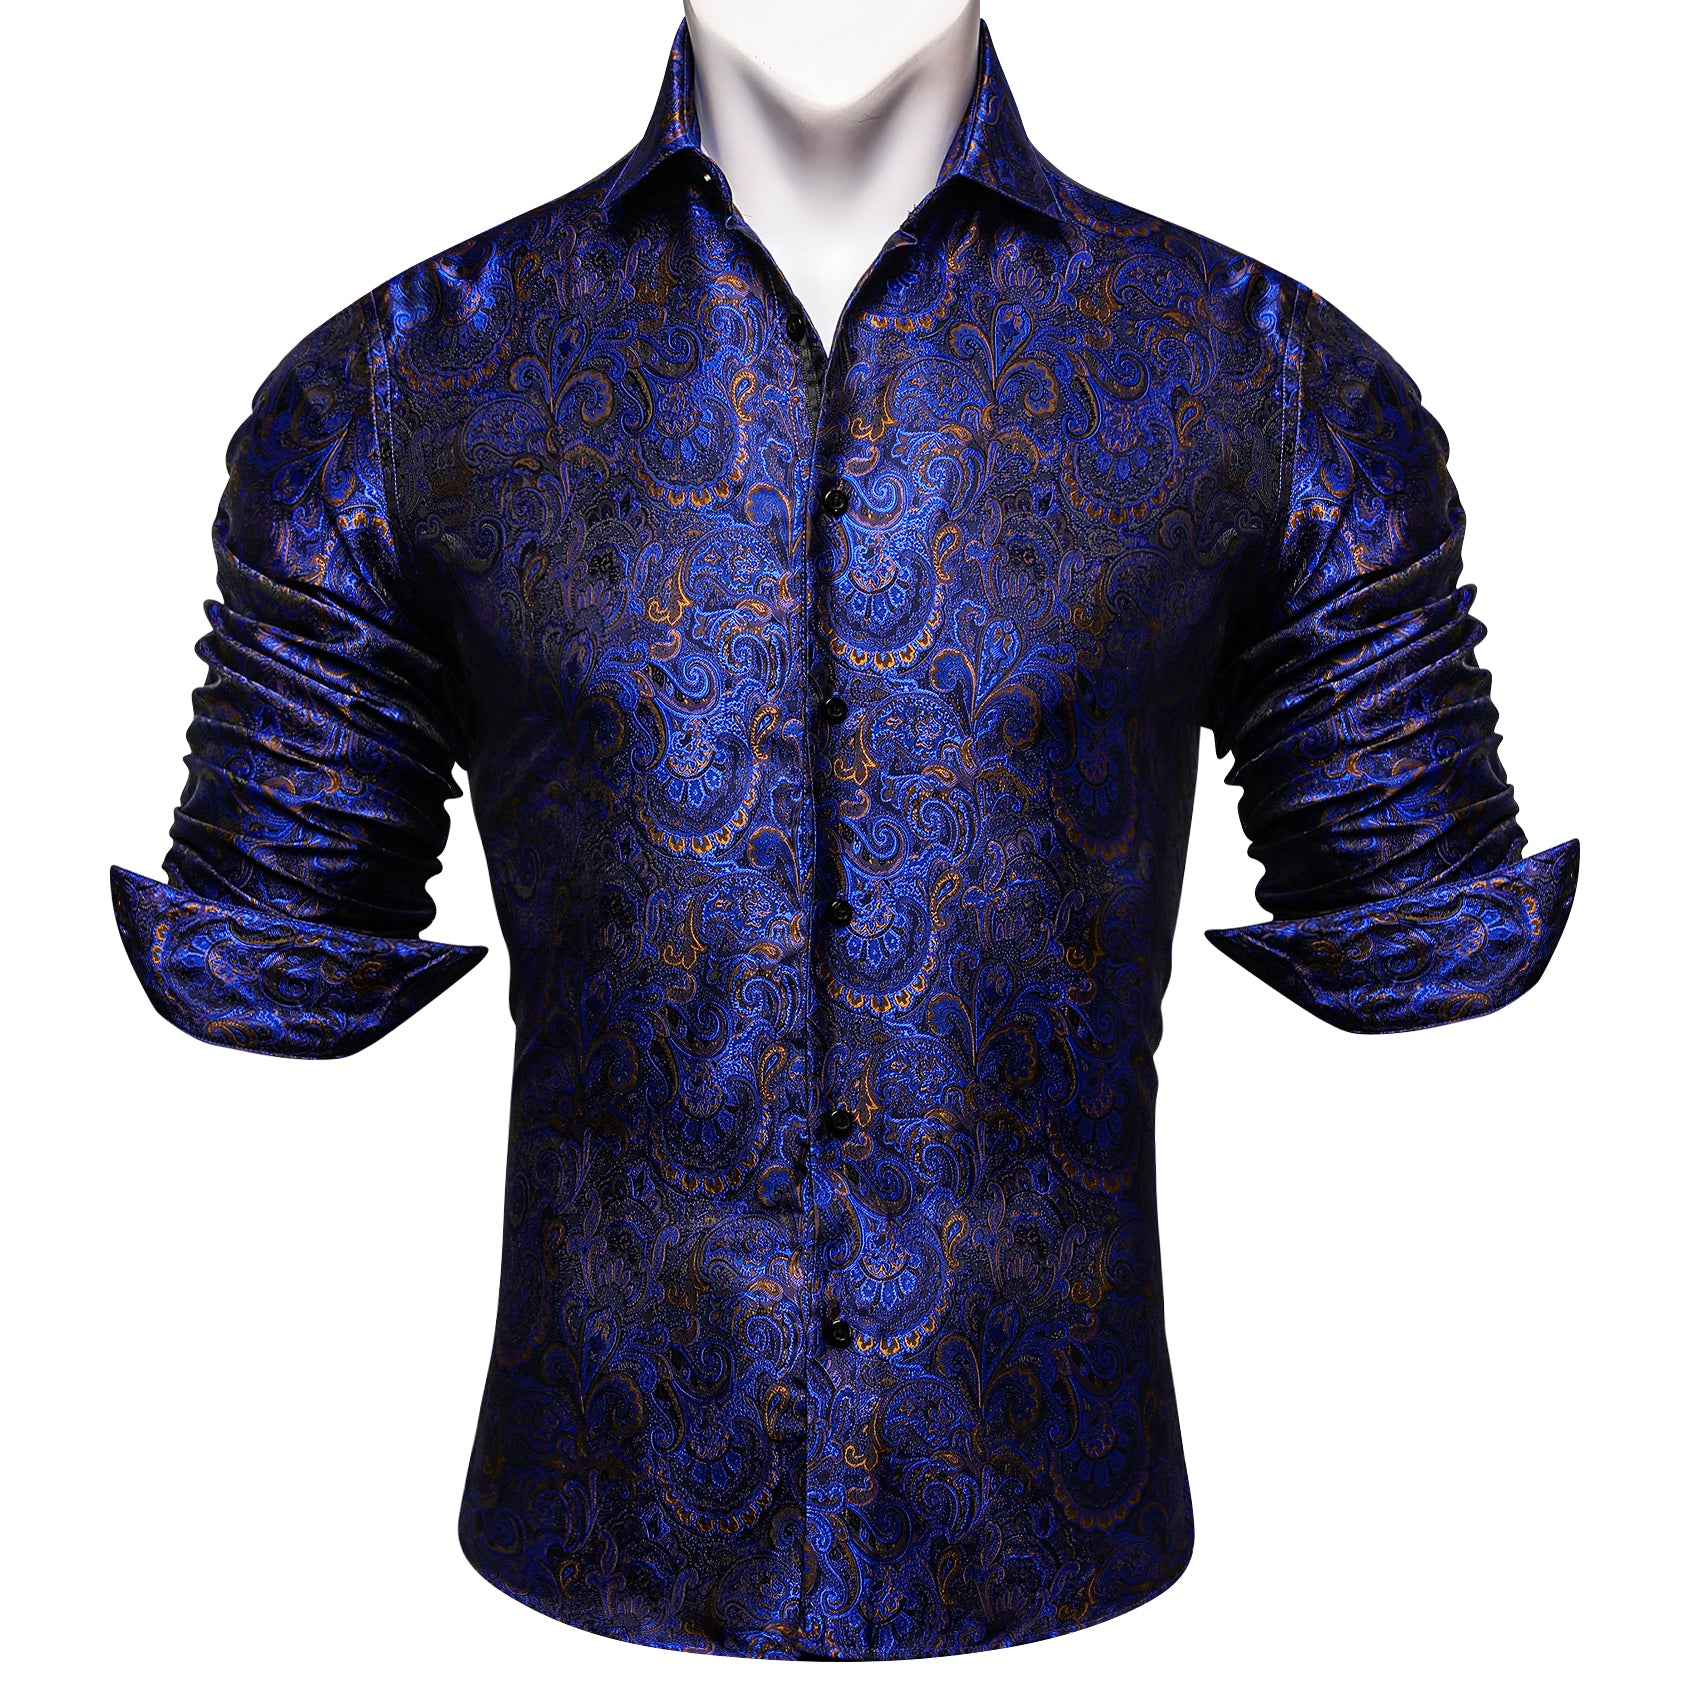 Barry.wang Button Down Shirt Blue Golden Floral Long Sleeve Shirt